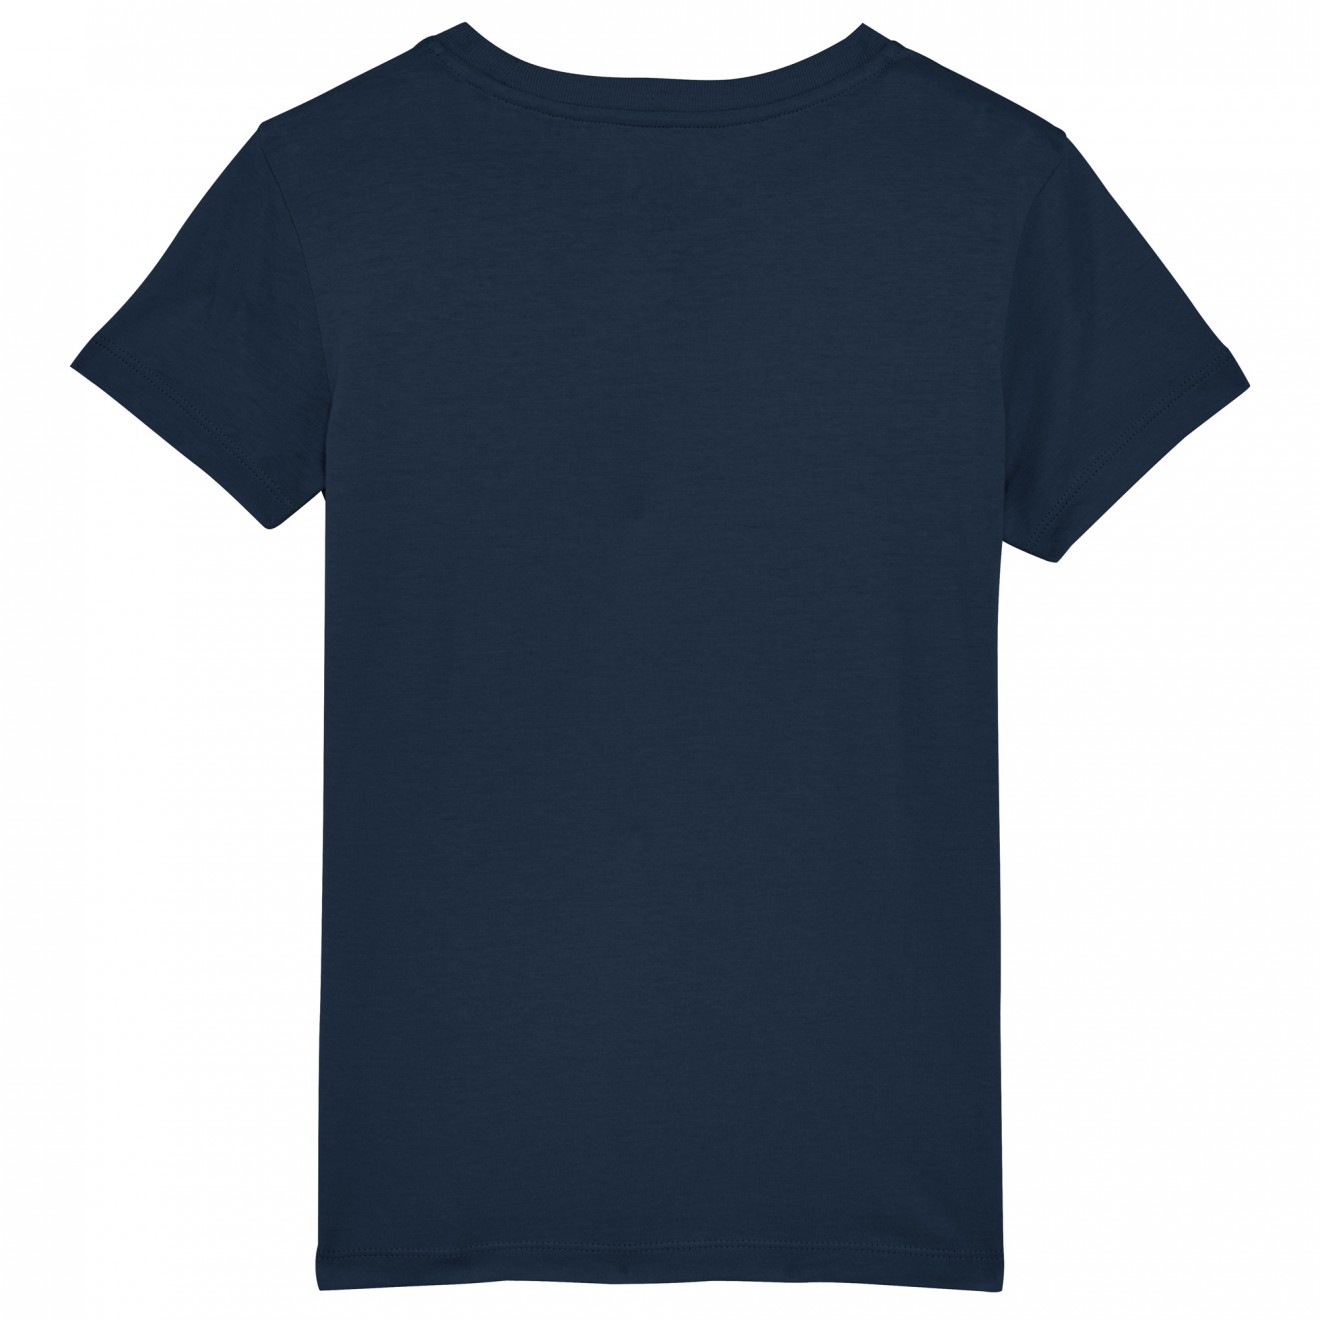 Afbeelding van het product Cosmos, uit de product categorie T-shirts